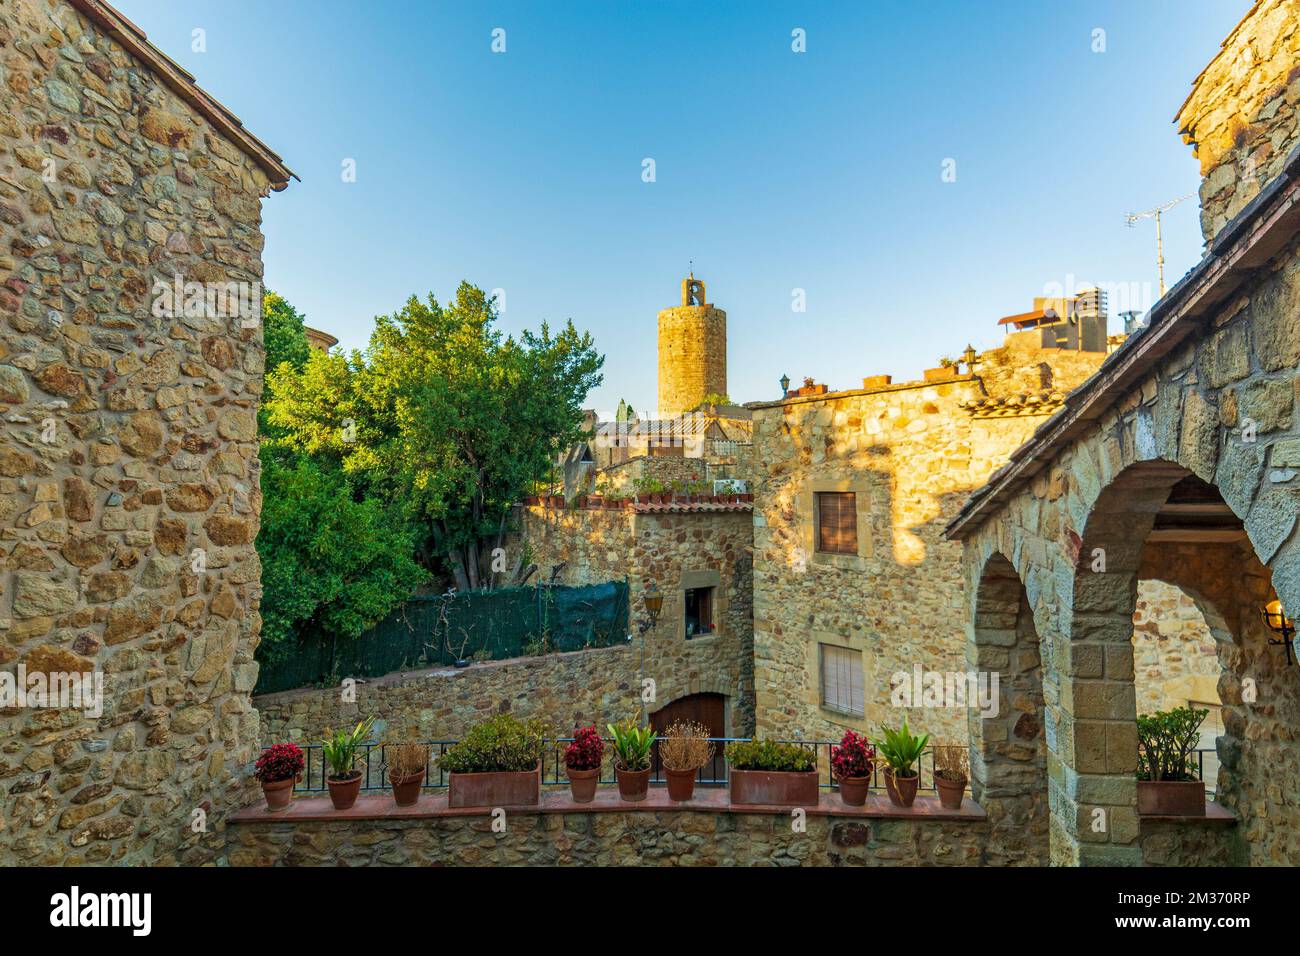 Pals, città medievale in Catalogna, Spagna, luce tarda sera il giorno d'estate Foto Stock